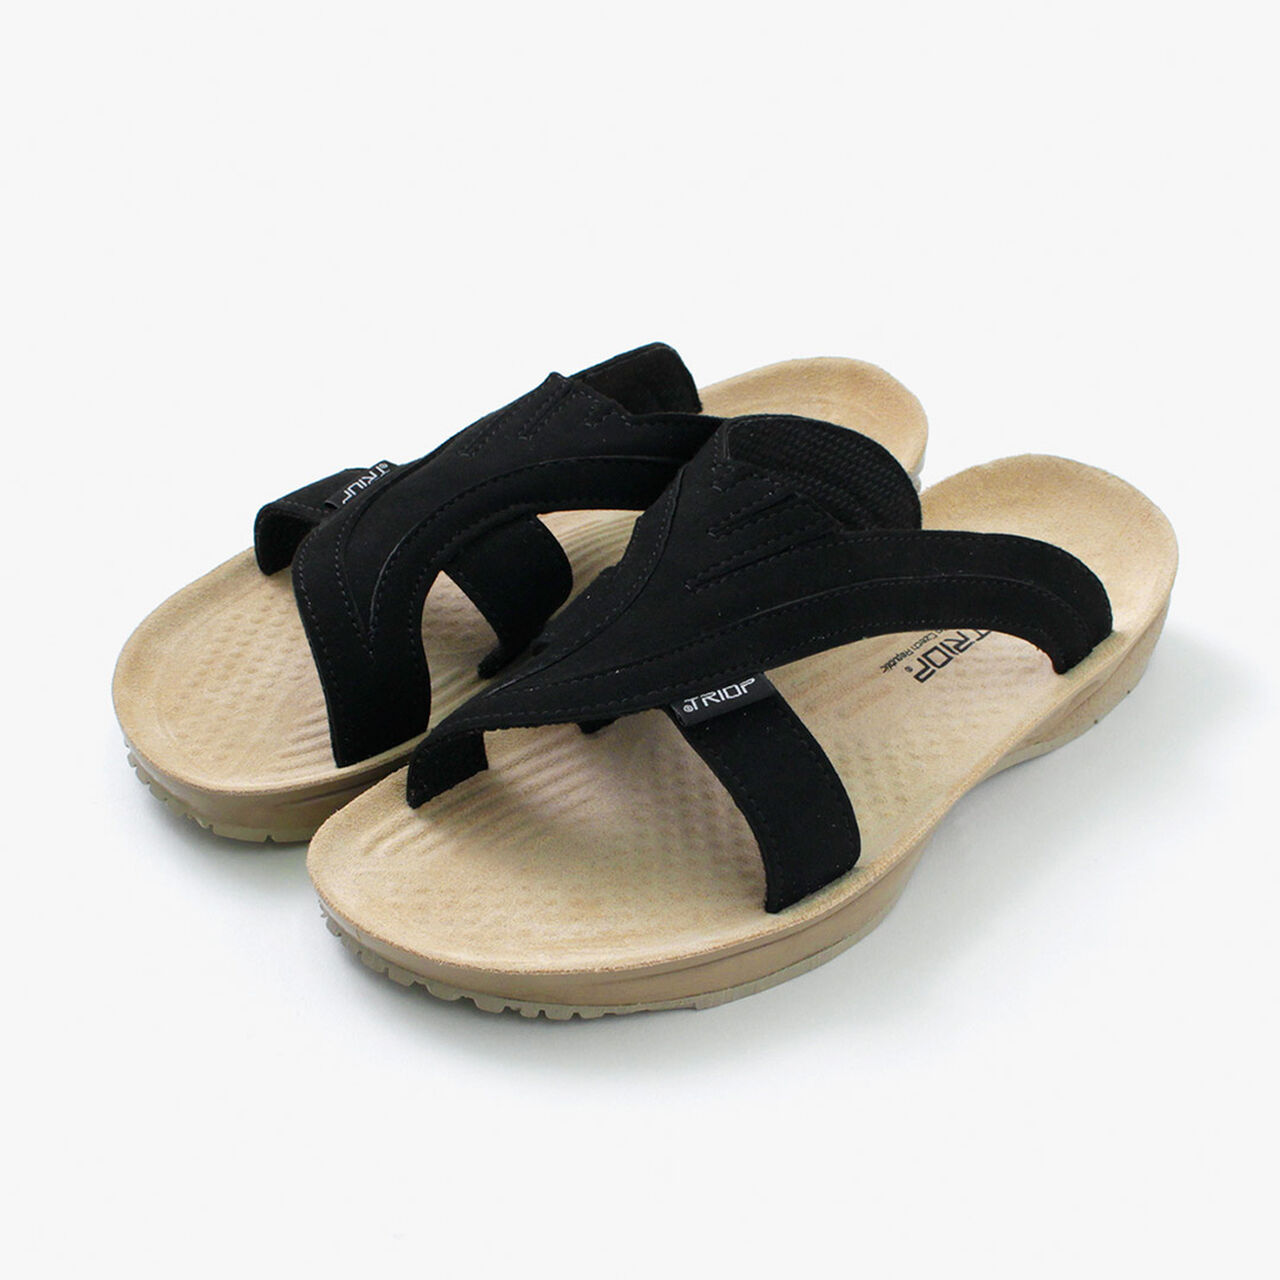 API Sandals,Black, large image number 0